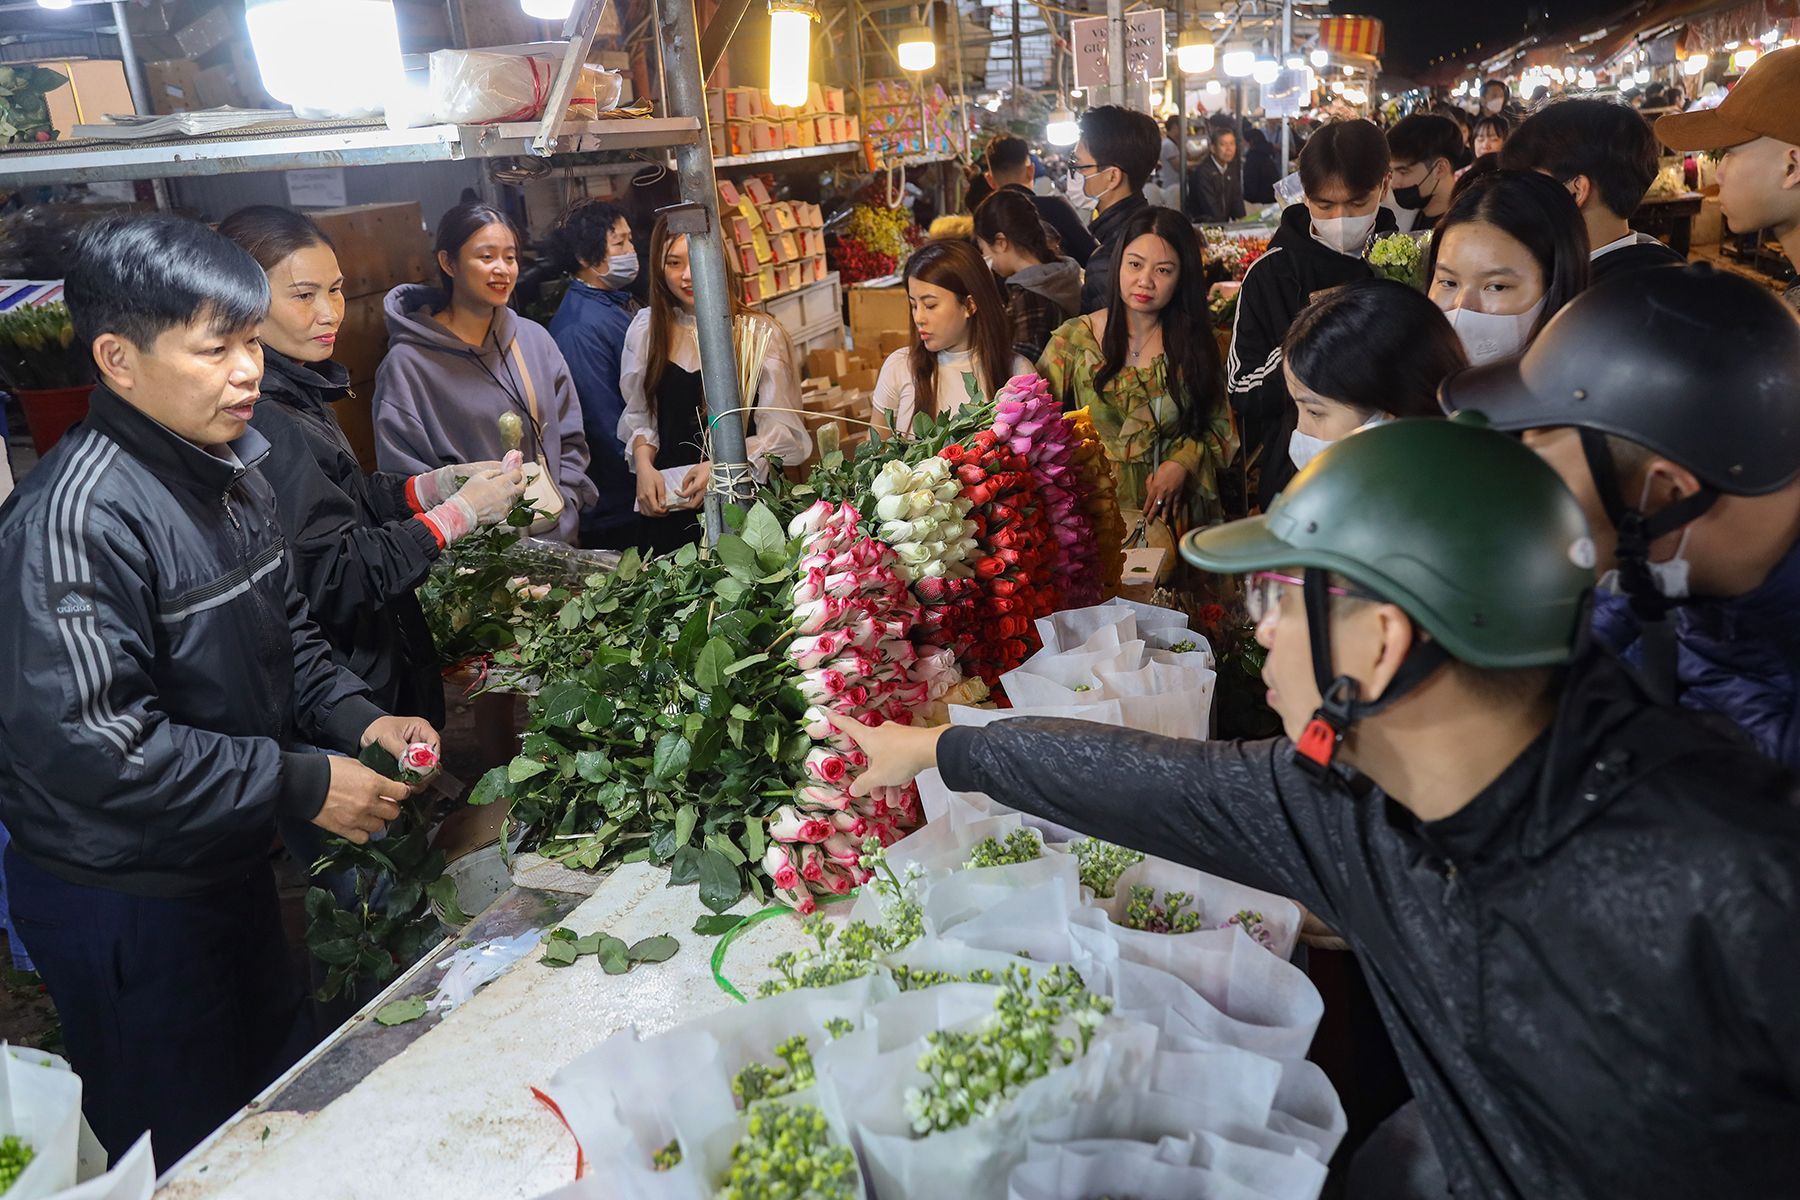 Hoa hồng tăng gấp 3 lần, chợ hoa lớn nhất Hà Nội đông nghịt người trước 8.3 - Ảnh 3.